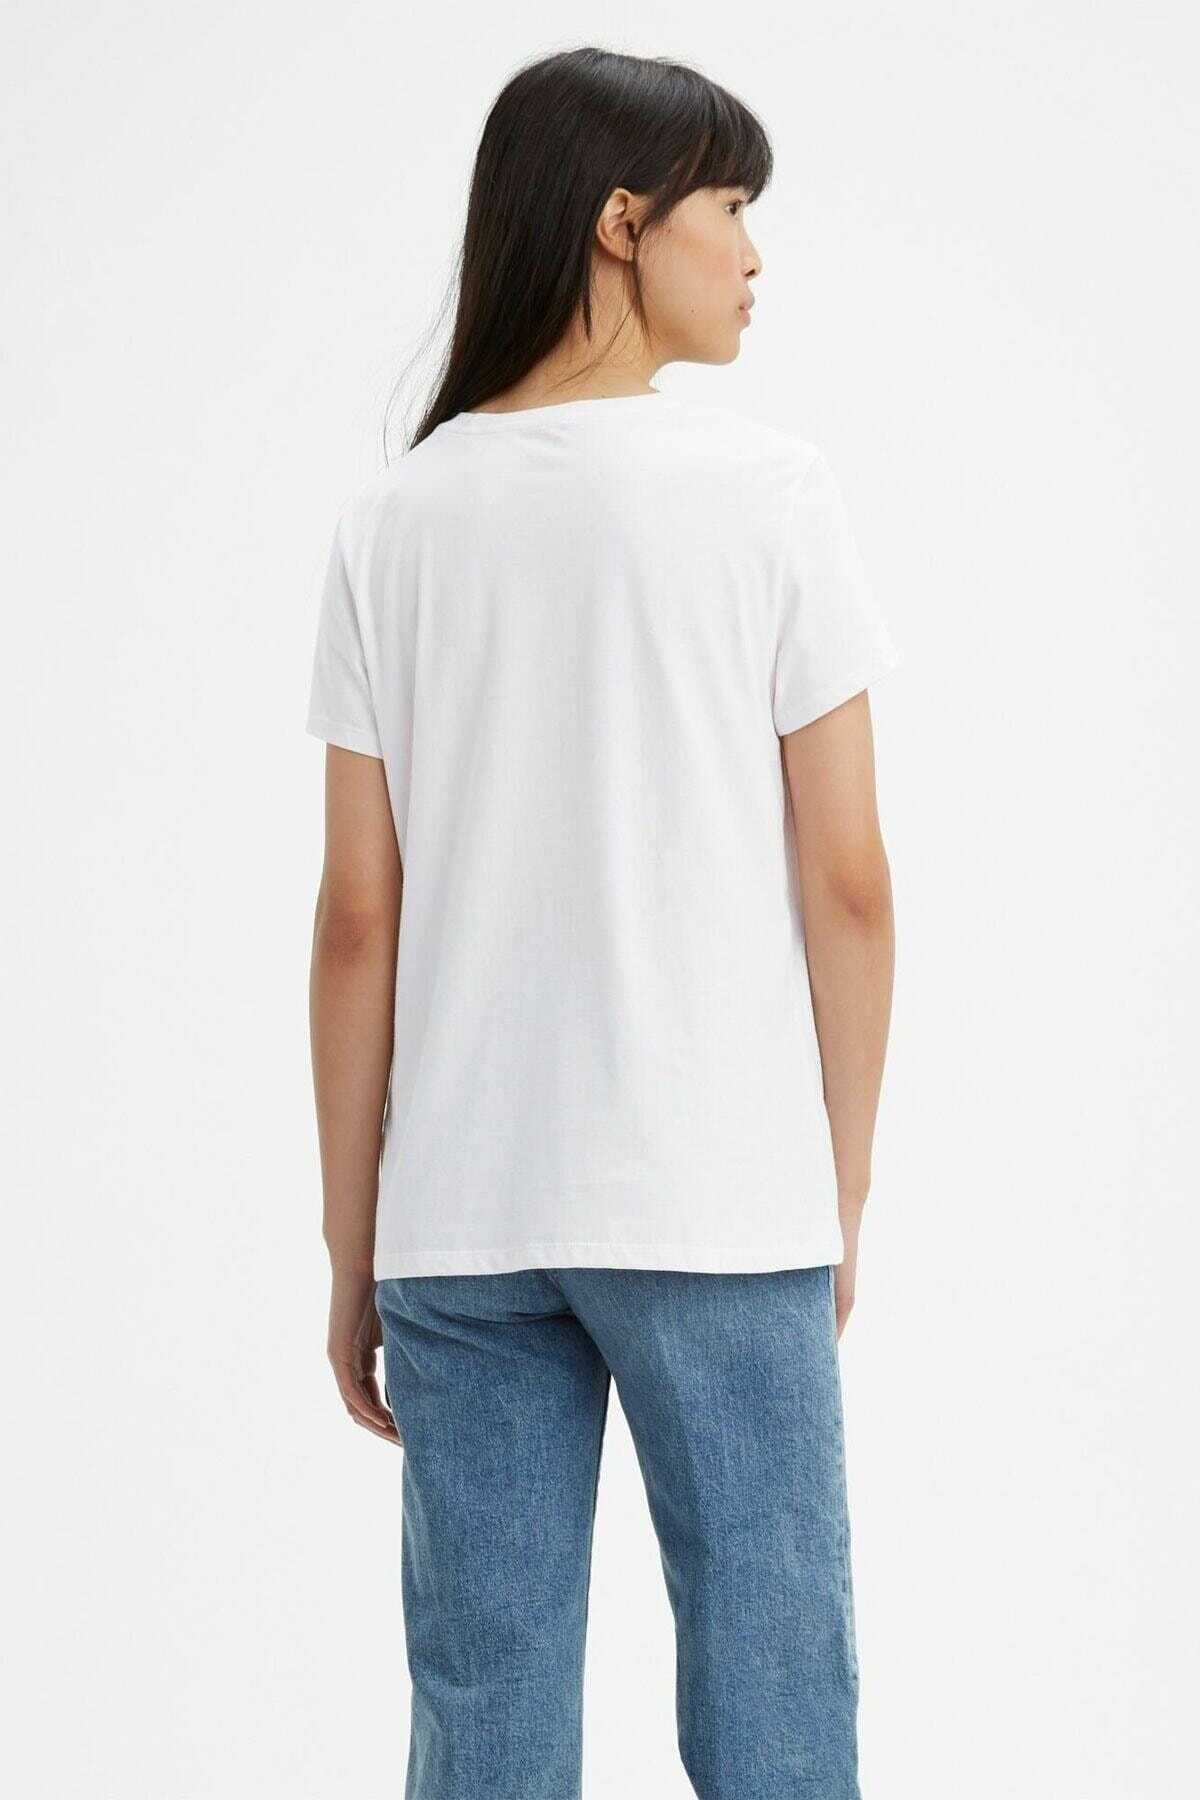 تیشرت یقه گرد چاپ دار زنانه سفید برند Levi's 